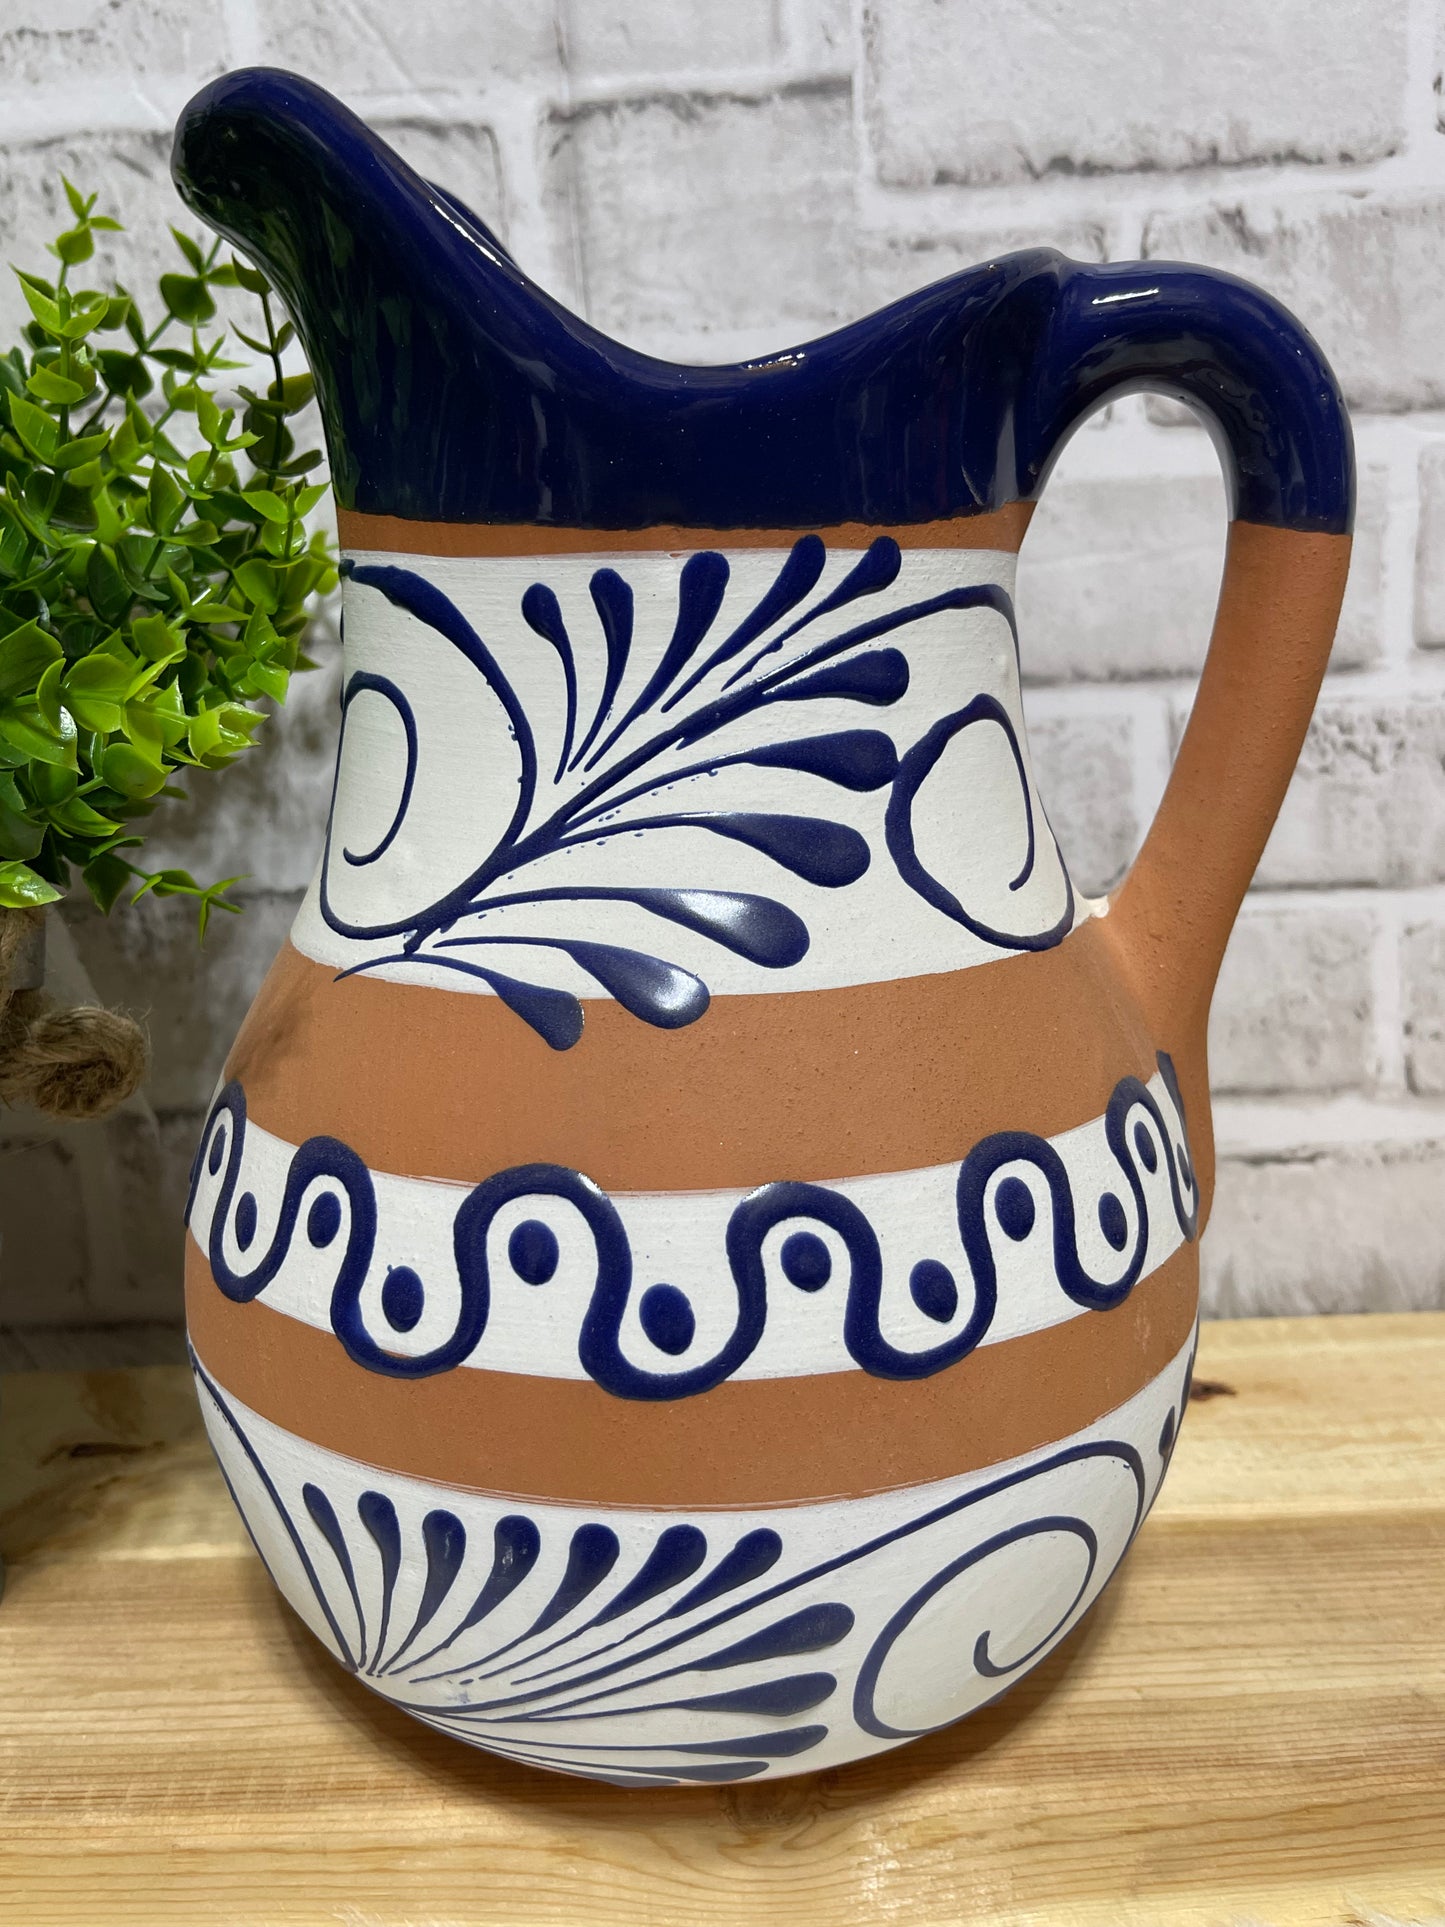 Mexican pottery ceramic/terracotta jar-pitcher/jarra de barro